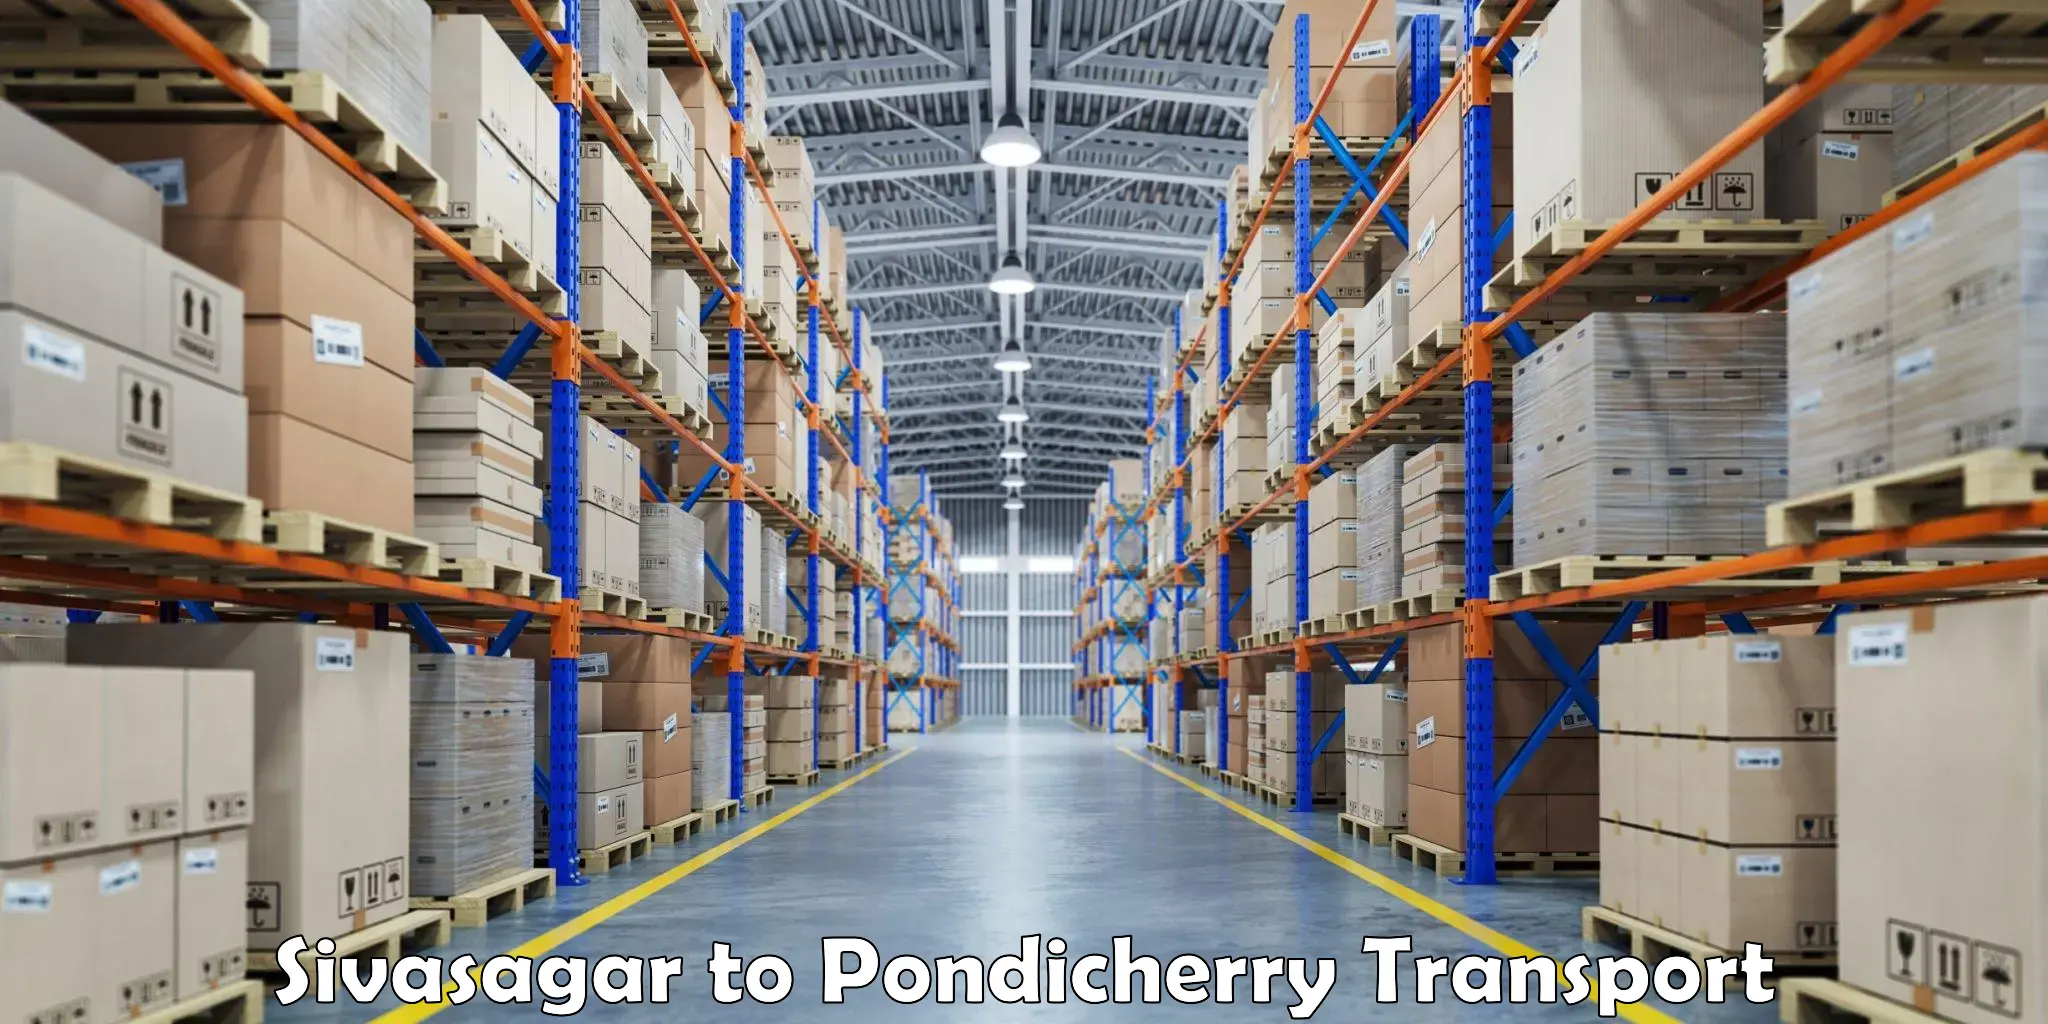 Online transport service Sivasagar to Pondicherry